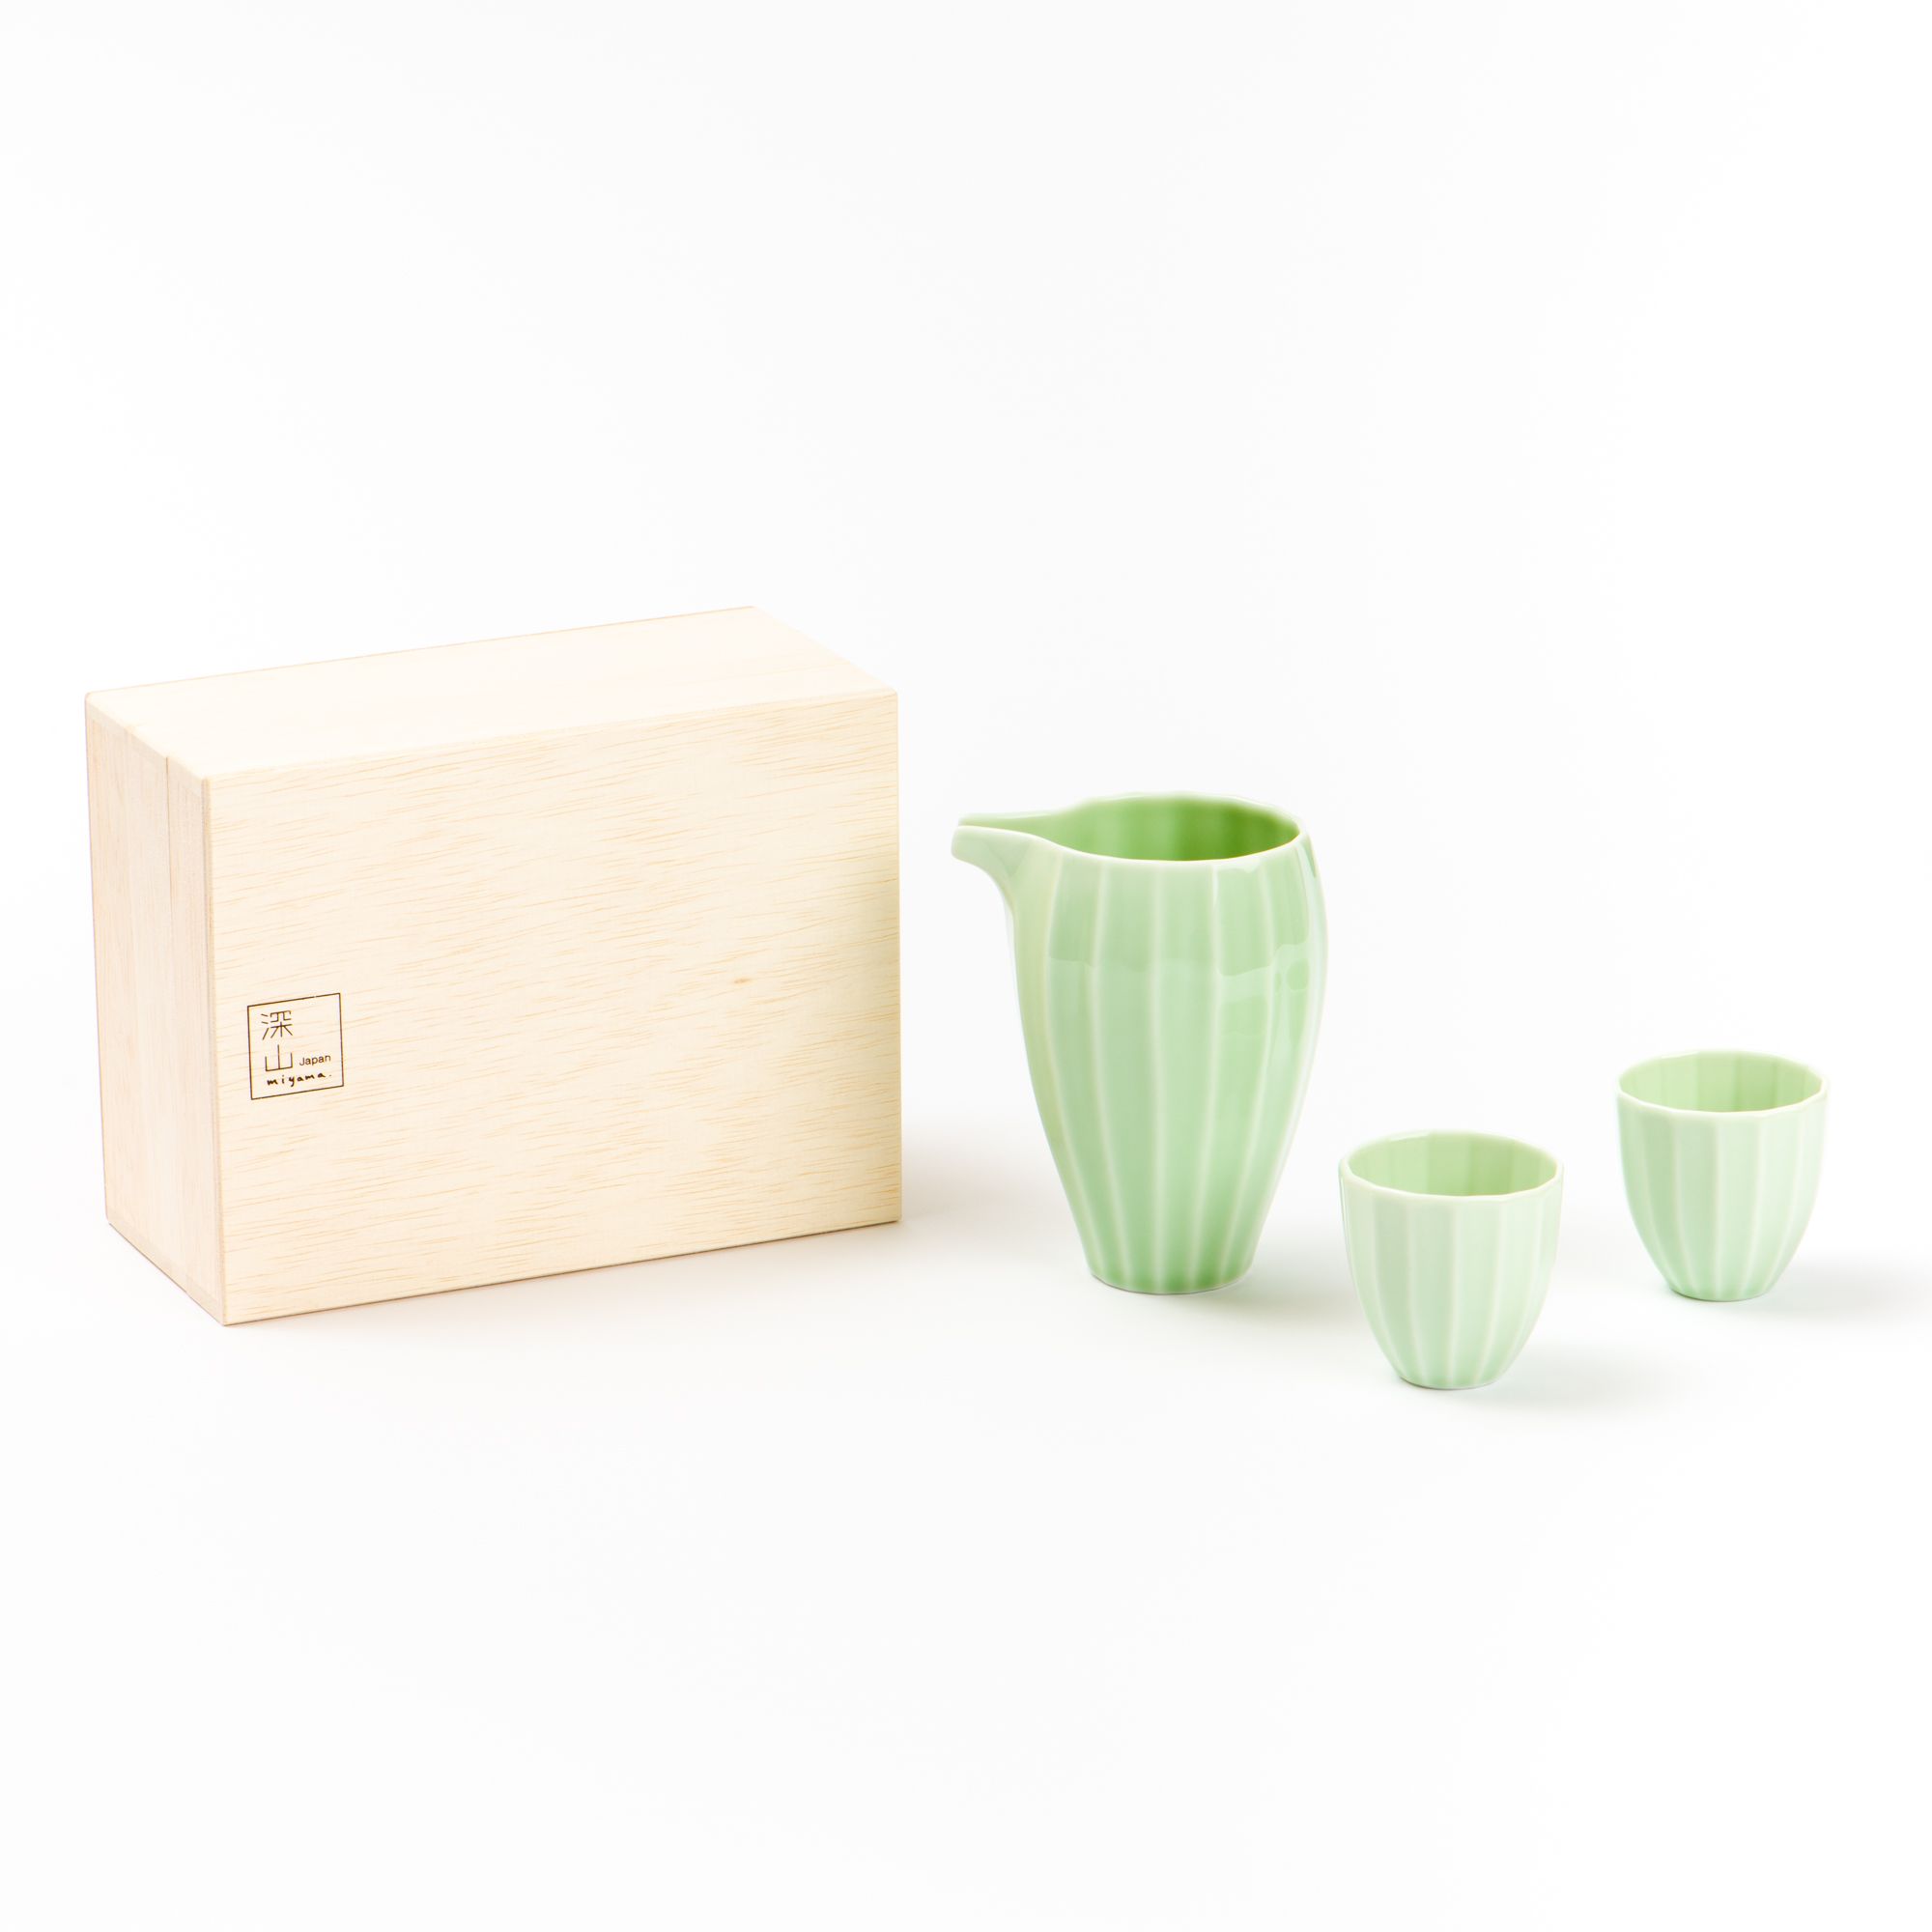 Cierto Hibiki Mino Ware Sake Set Gift Box - Green